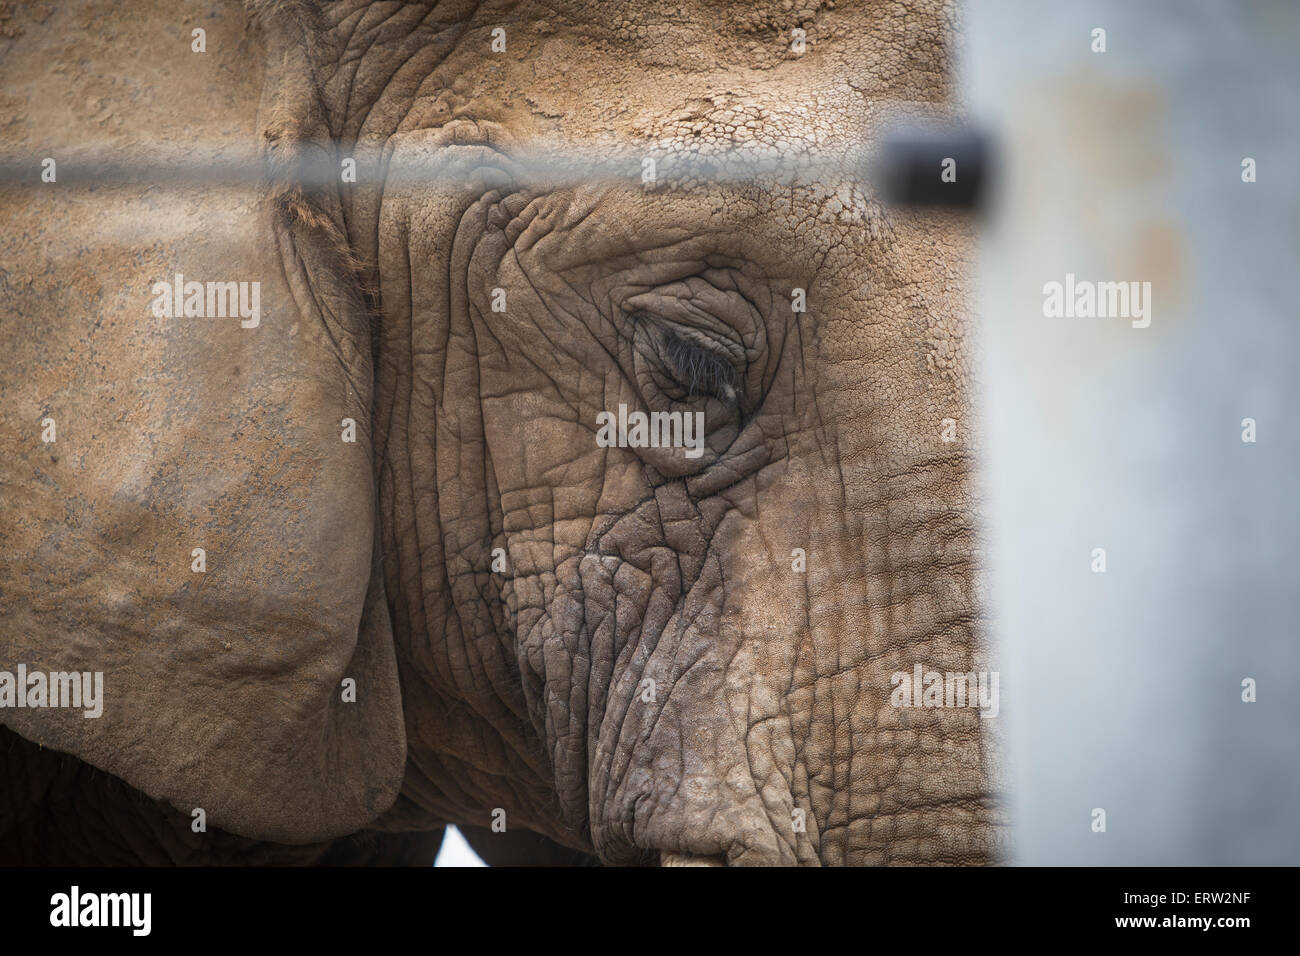 Sad Elephant in Captivity Stock Photo